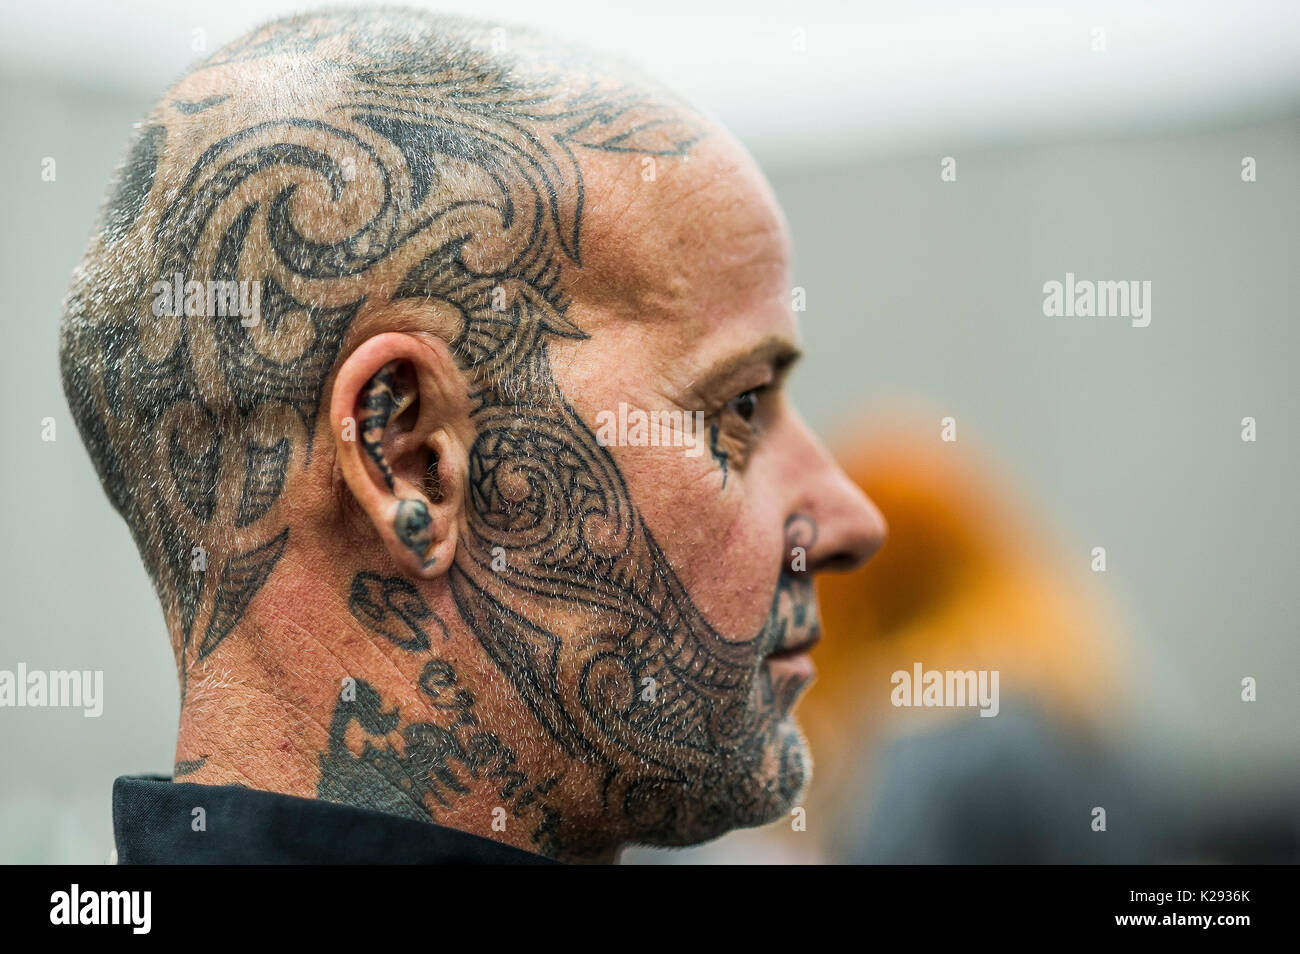 Tatuaggio. Un uomo con un tatuato il viso e testa in corrispondenza della Cornovaglia Tattoo Convention. Foto Stock